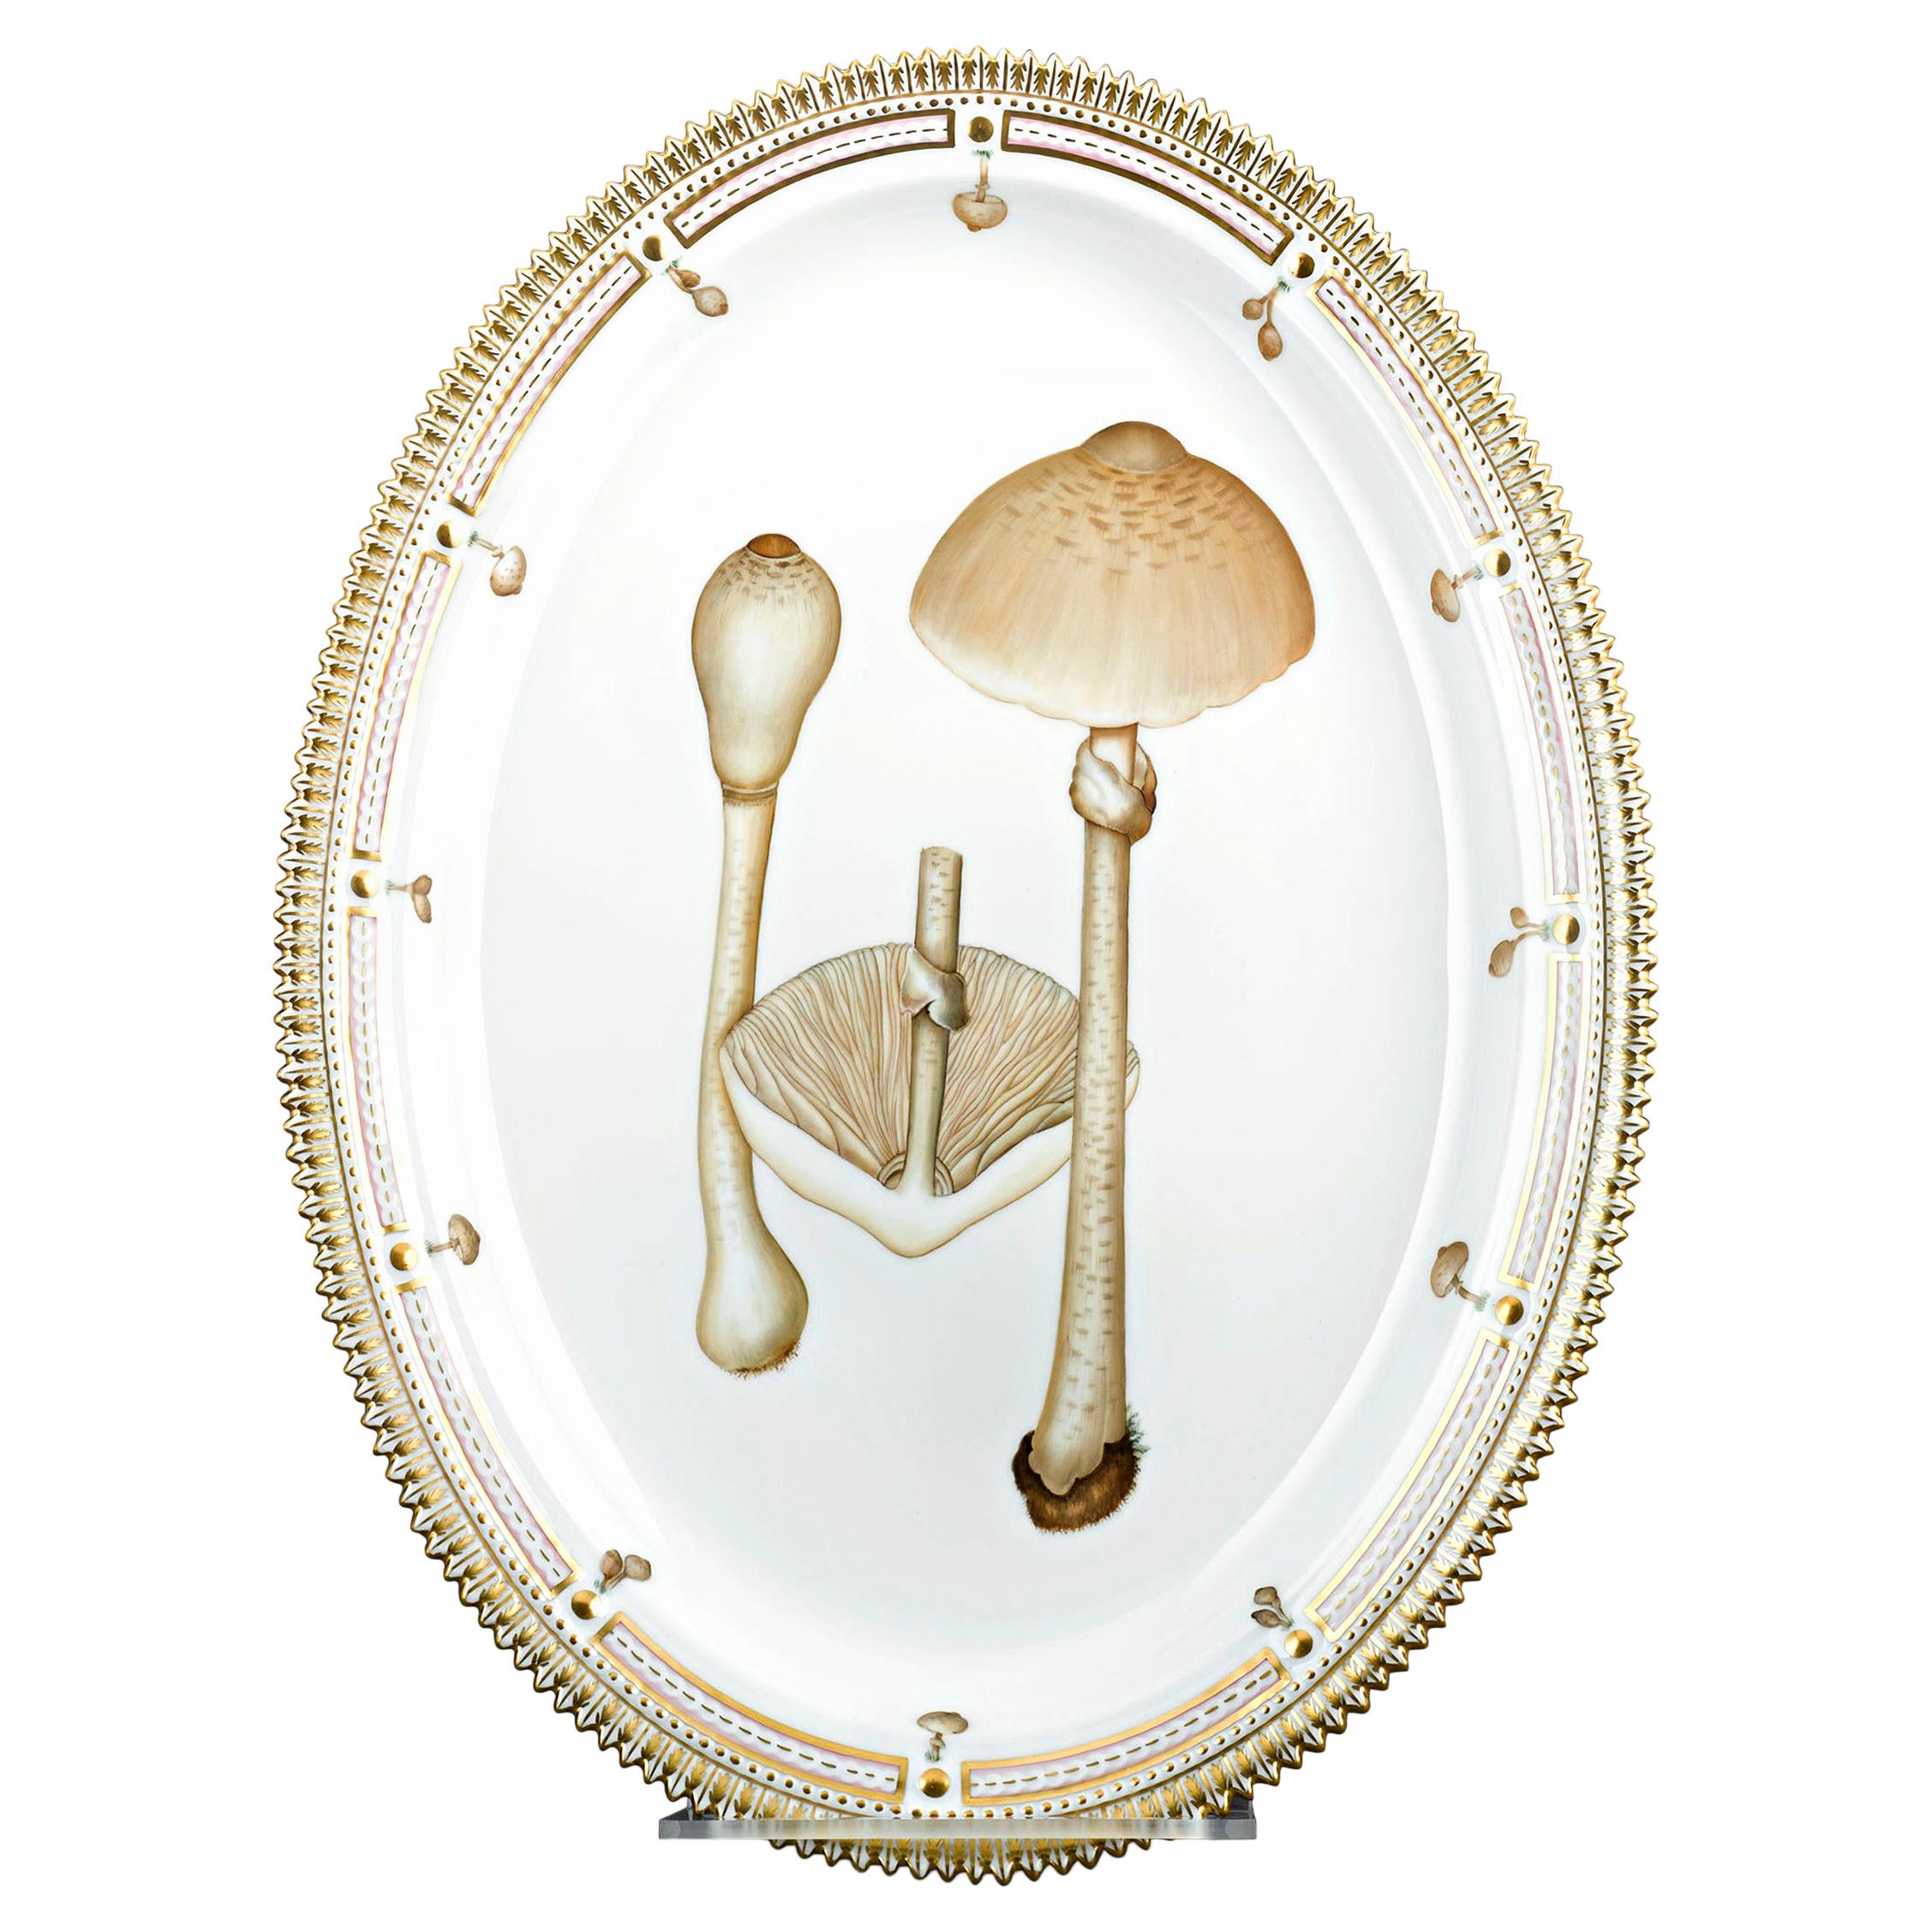 Flora Danica Parasol Mushroom Platter by Royal Copenhagen